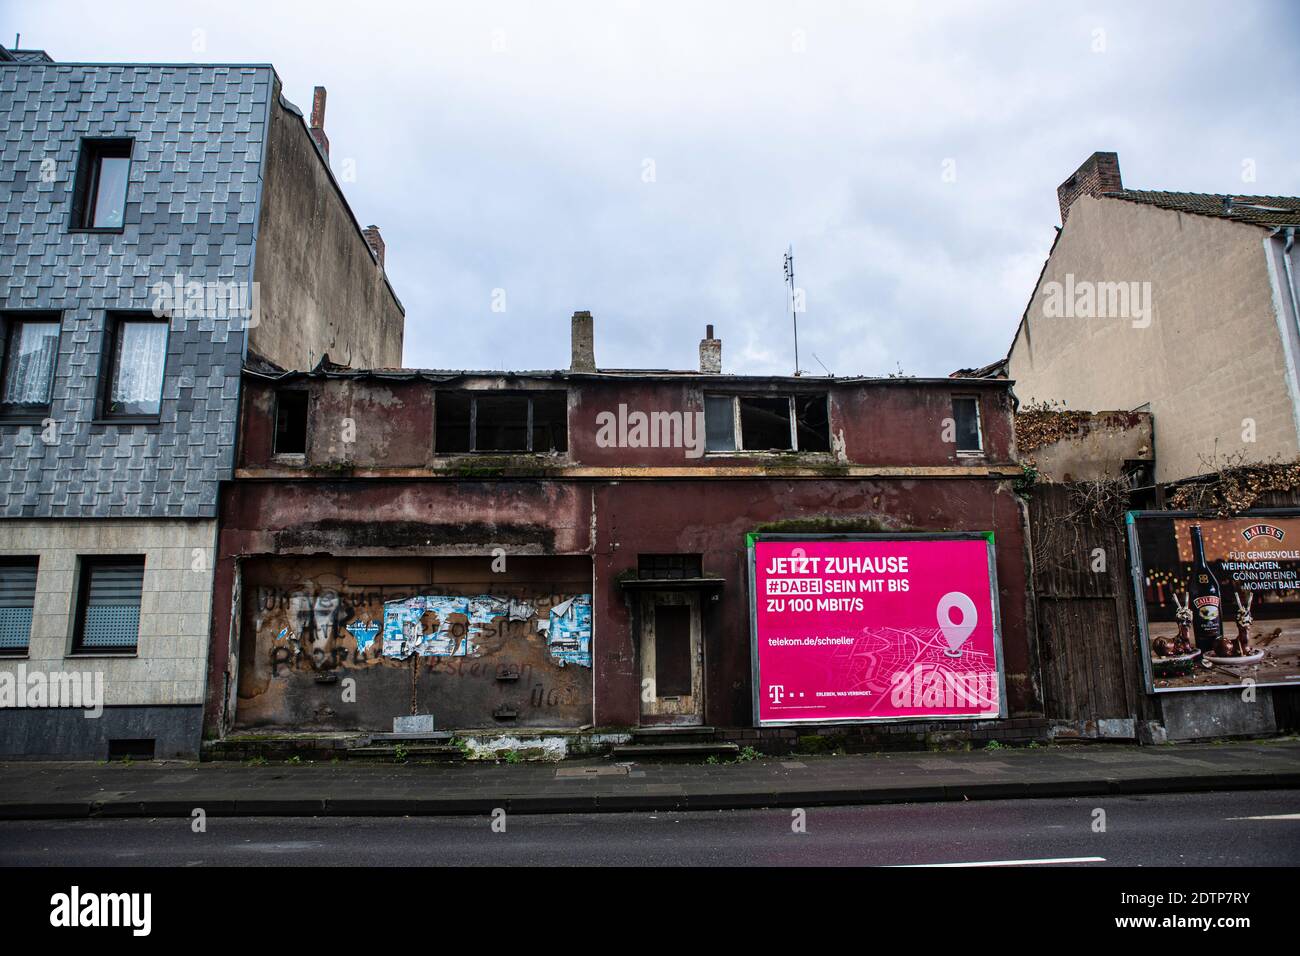 Reklame un Trümmerhäusern en Duisburg. Die Telekom wirbt mit 'jetzt zuhause', wo kein zu hause mehr ist. Foto de stock